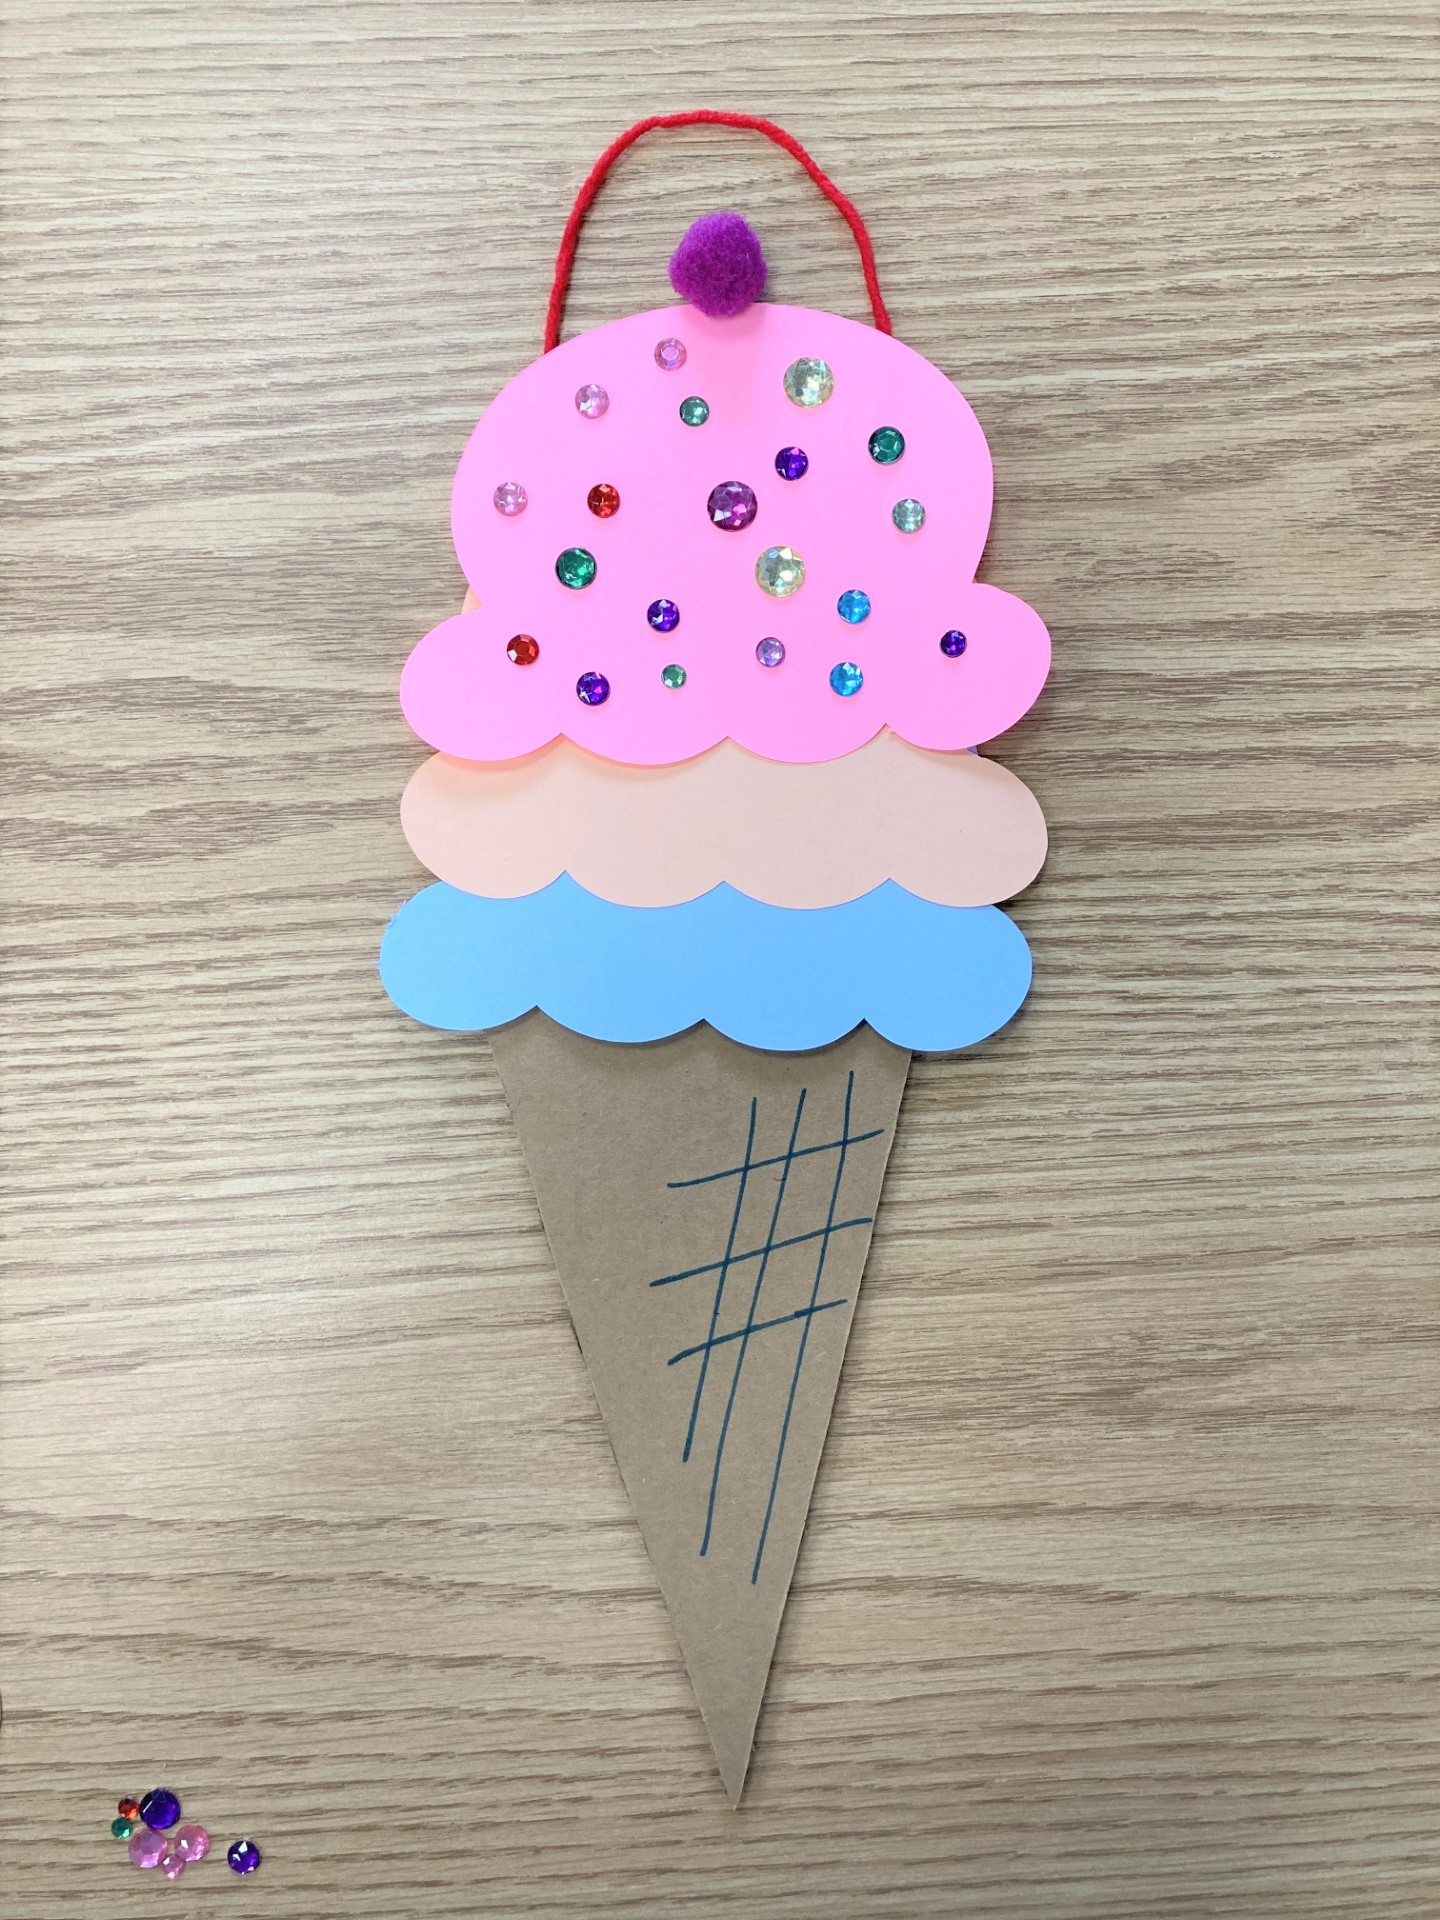 Phot of ice cream cone craft